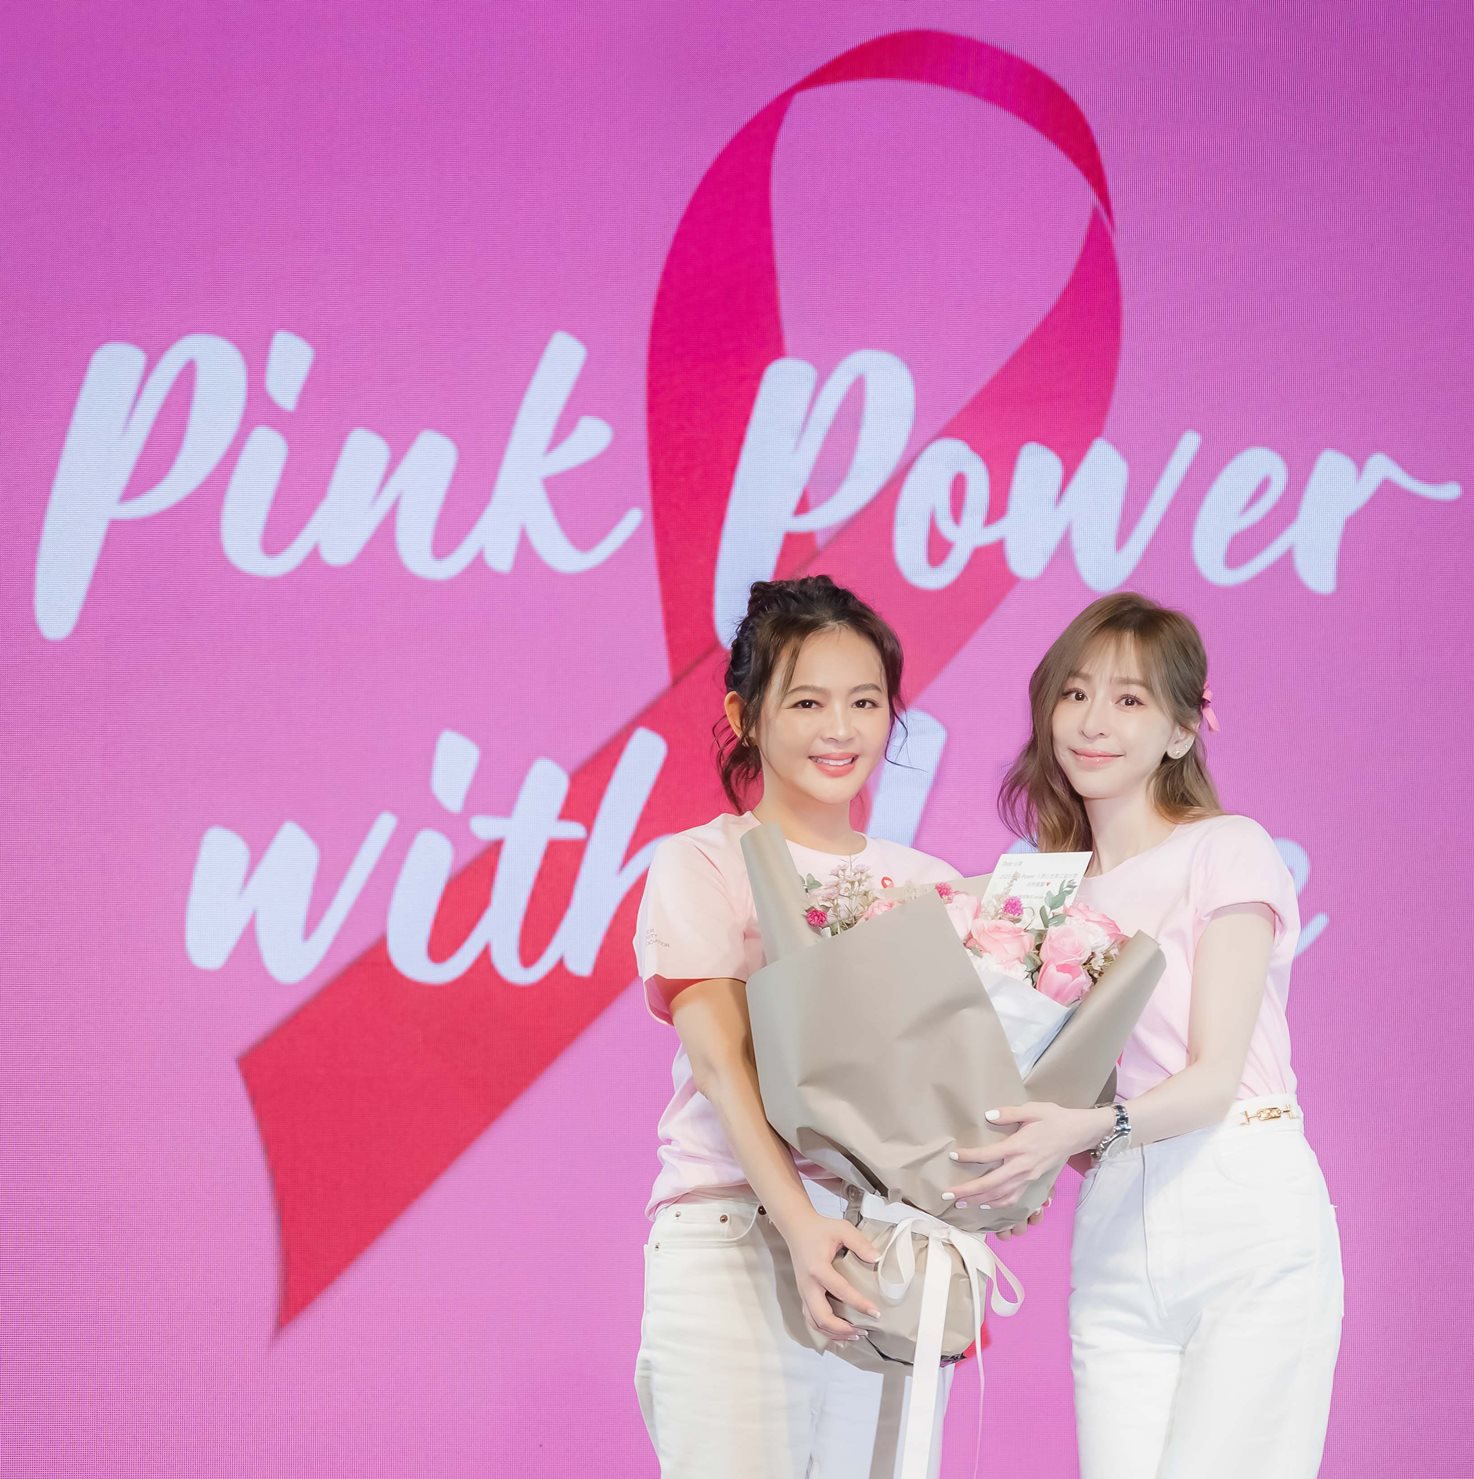 王心凌|PINKPOWER|愛自己粉給力|Pink Power台灣粉紅力量公益協會